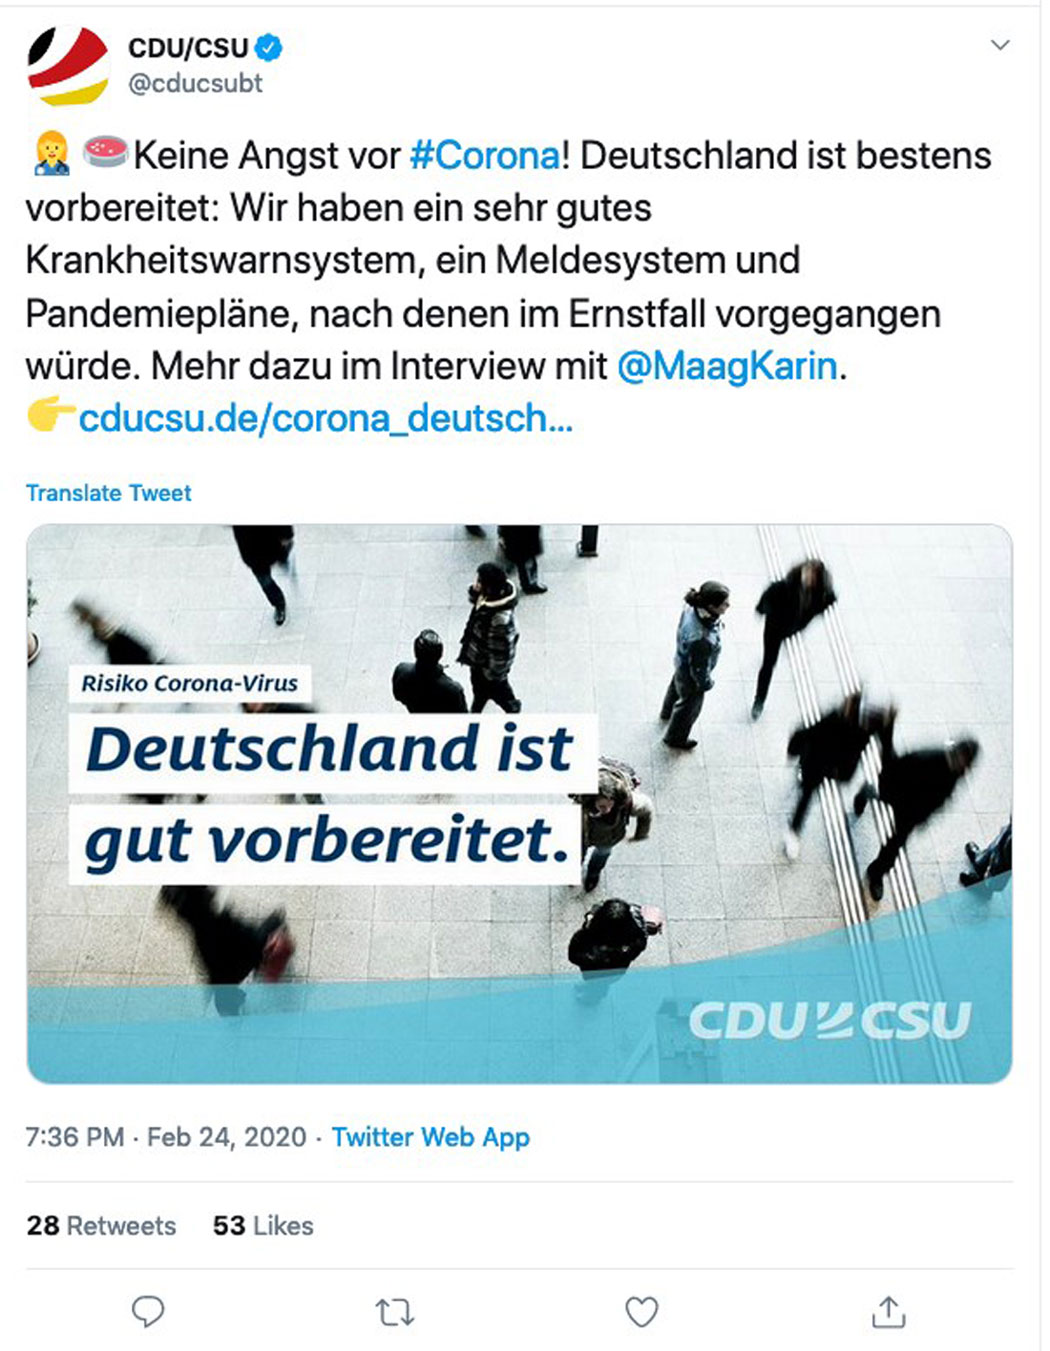 Die CDU/CSU verhöhnt und verspottet die Deutschen!